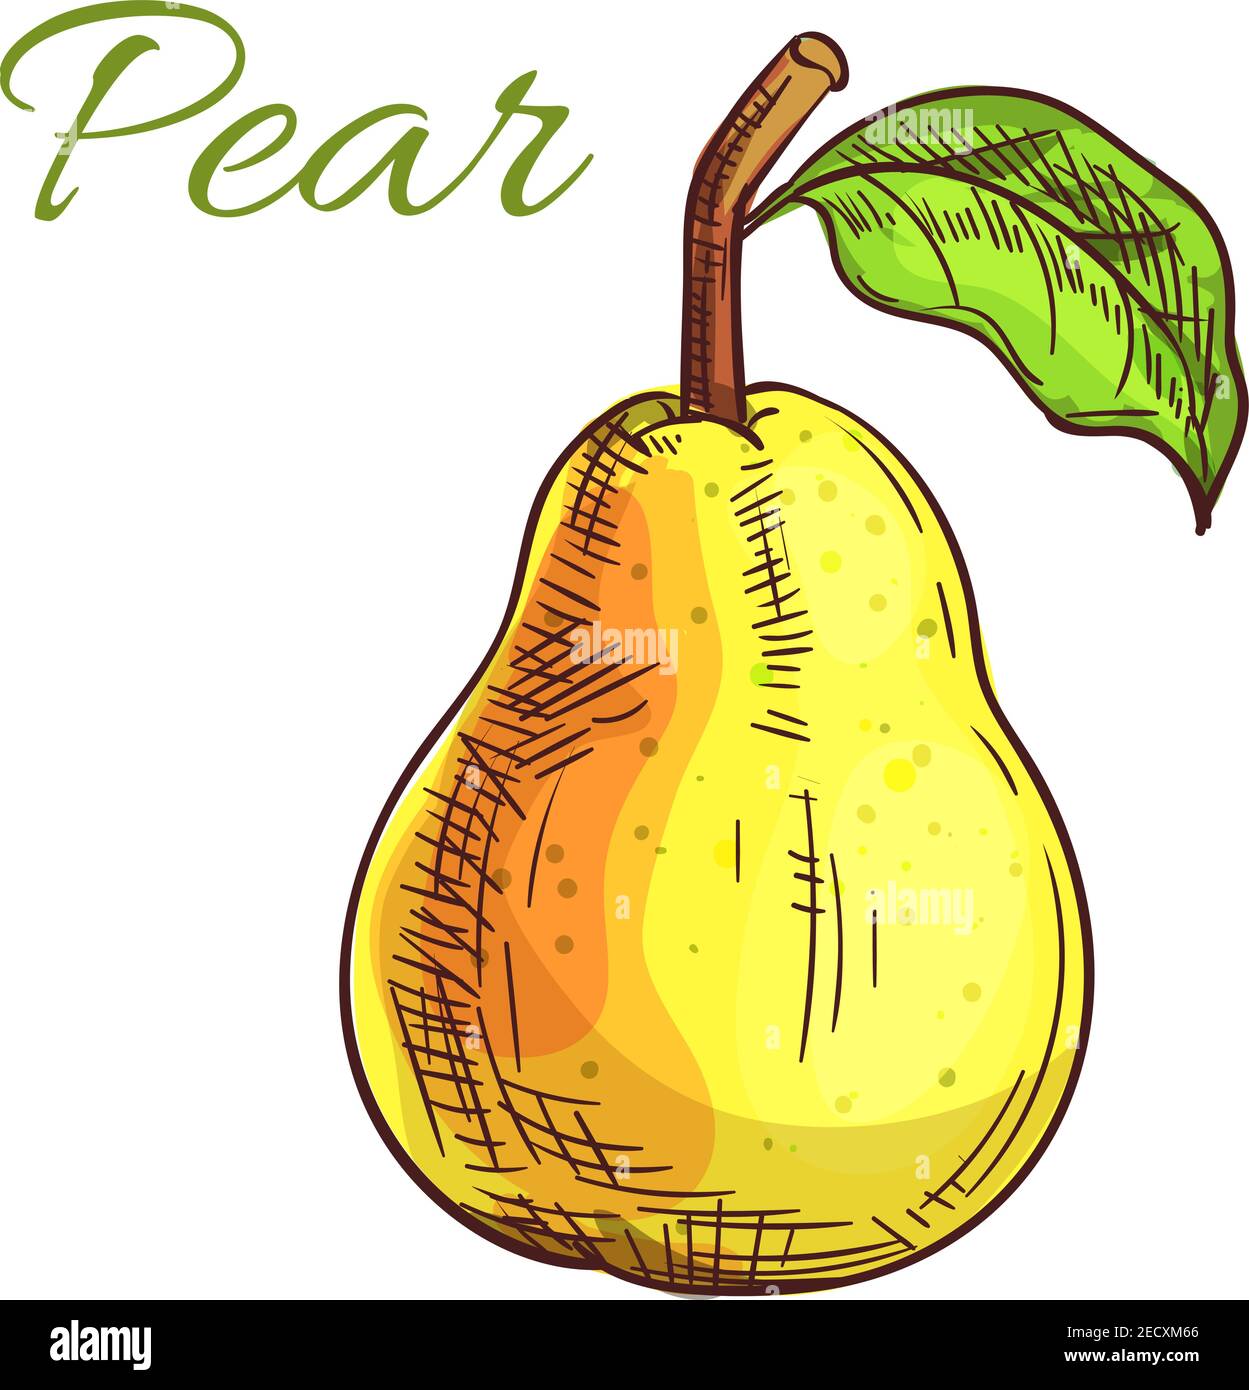 Saftige Birnenfrucht isolierte Skizze der gelben reifen Birne mit  orangefarbenem Punkt und grünem Blatt. Bio-Anbau, Obst Dessert und  Saft-Menü, Lebensmittelverpackung de Stock-Vektorgrafik - Alamy